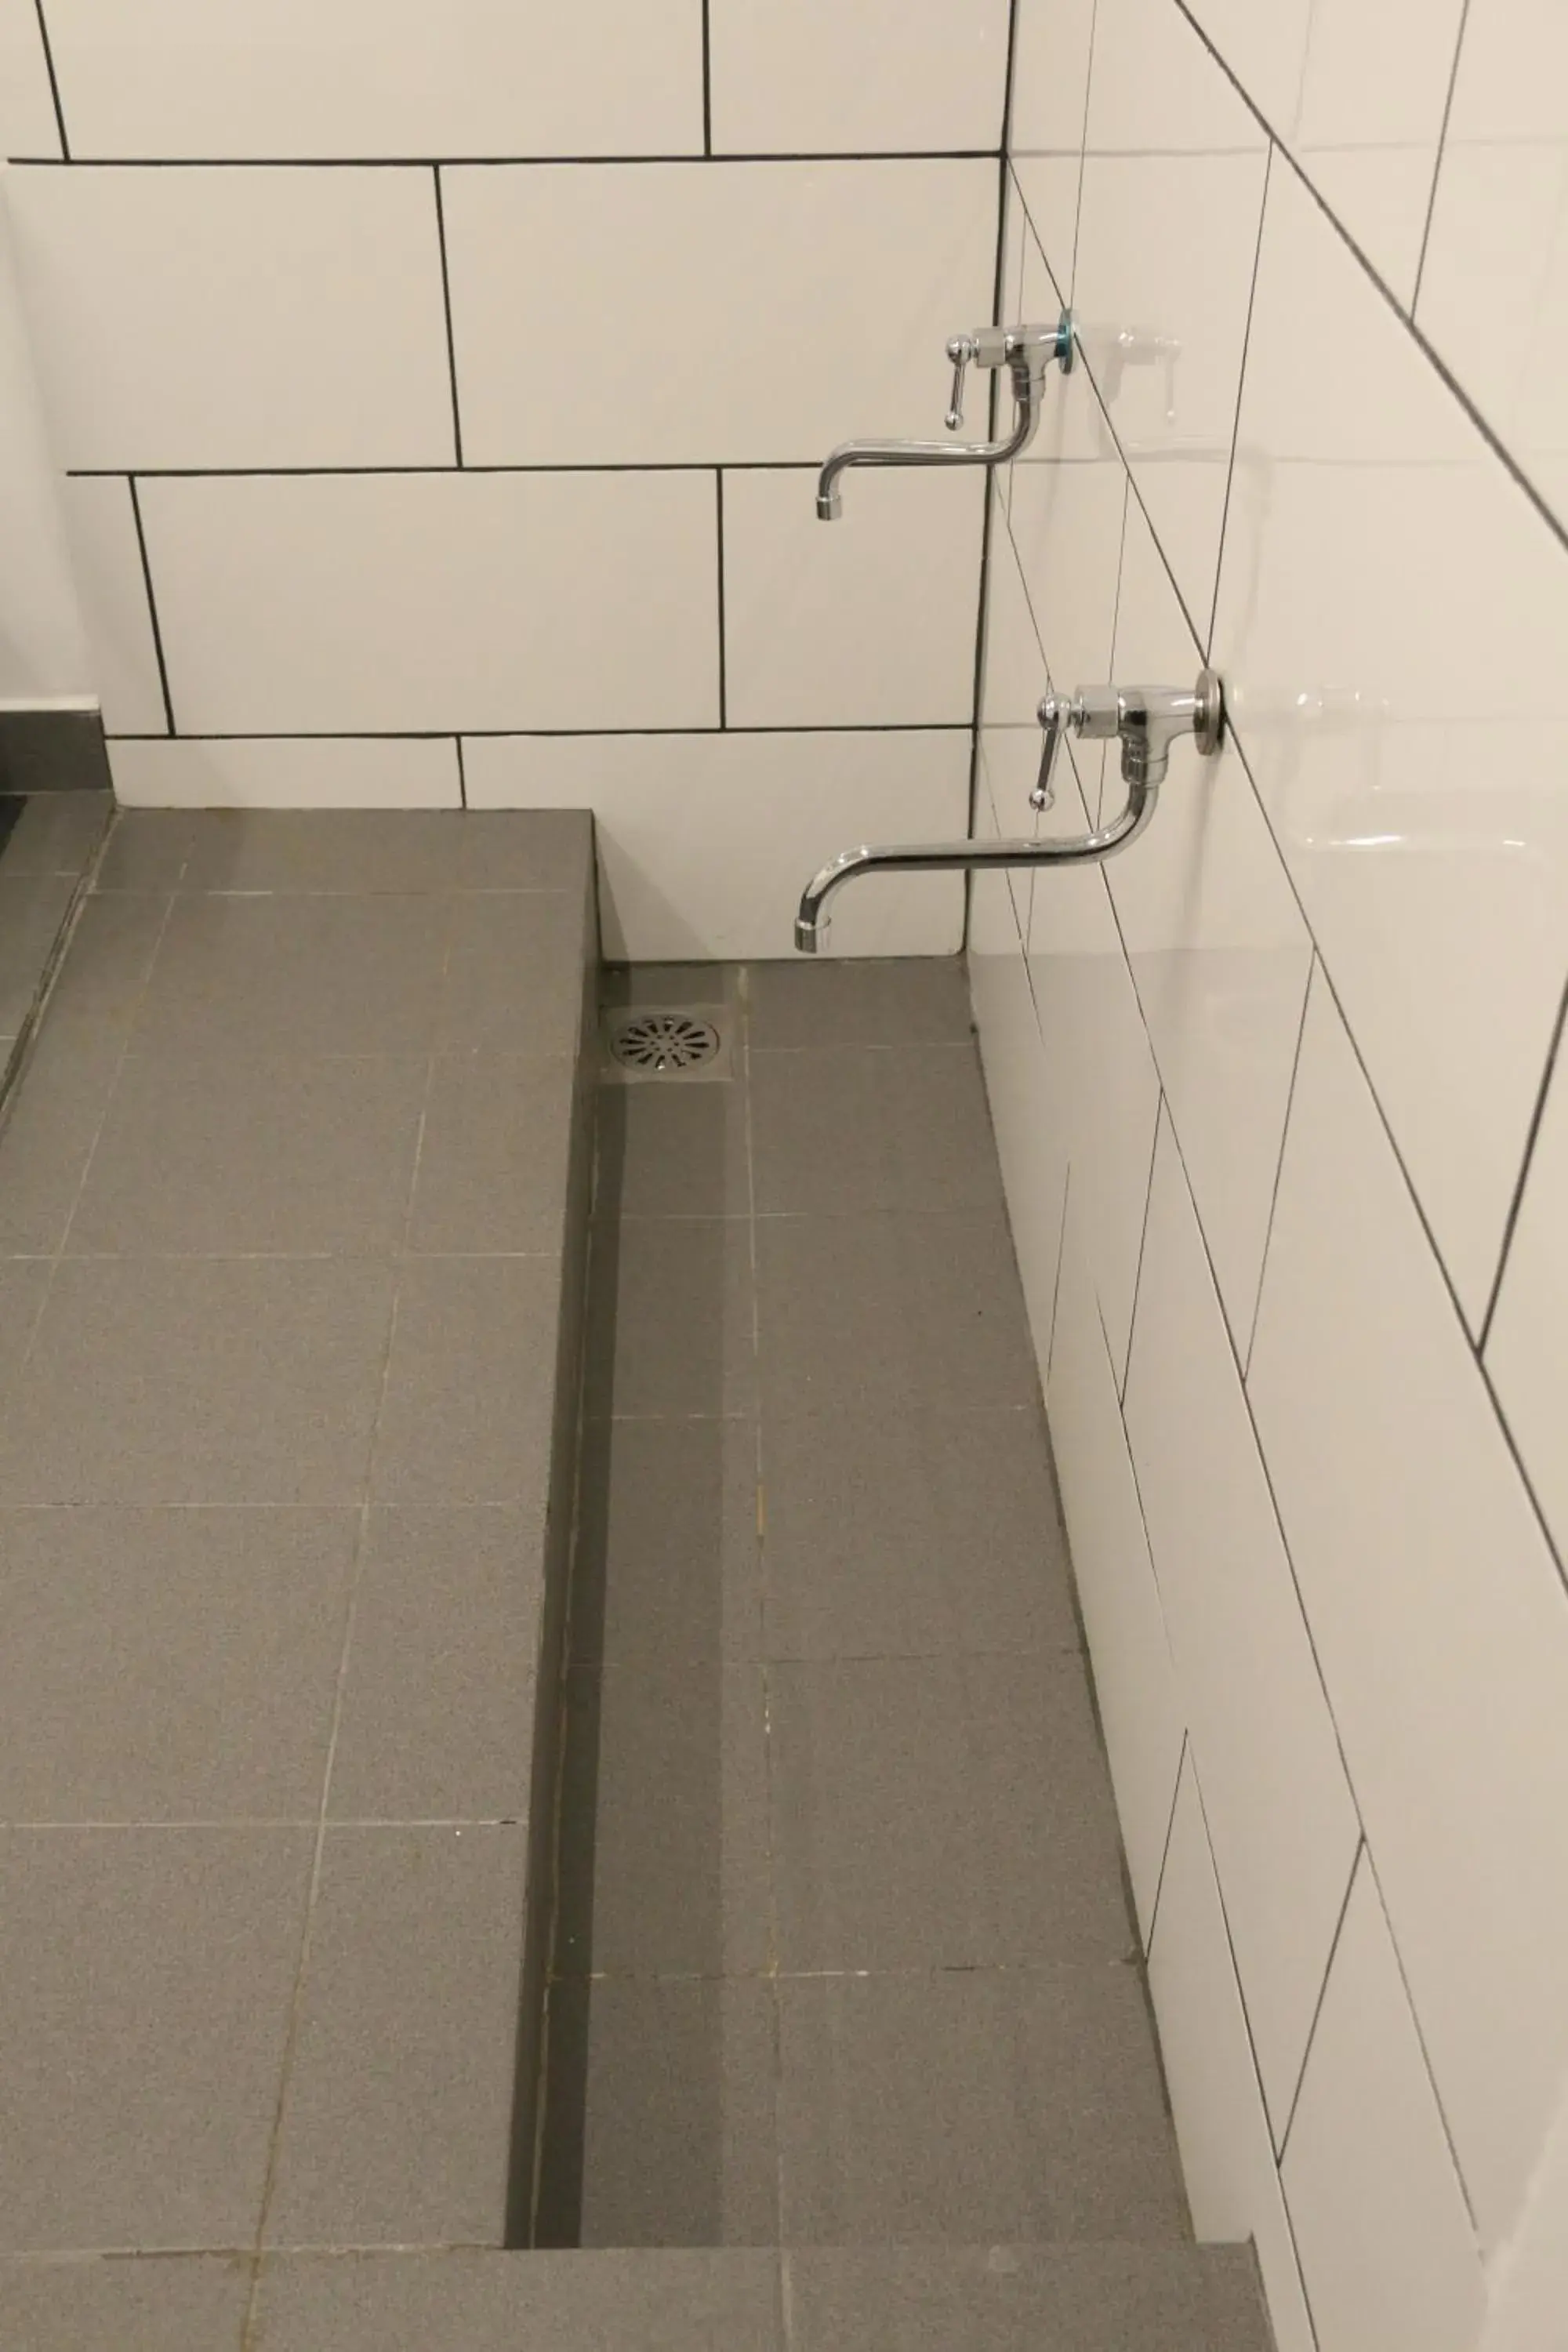 Area and facilities, Bathroom in Lazdana Hotel Kuala Lumpur